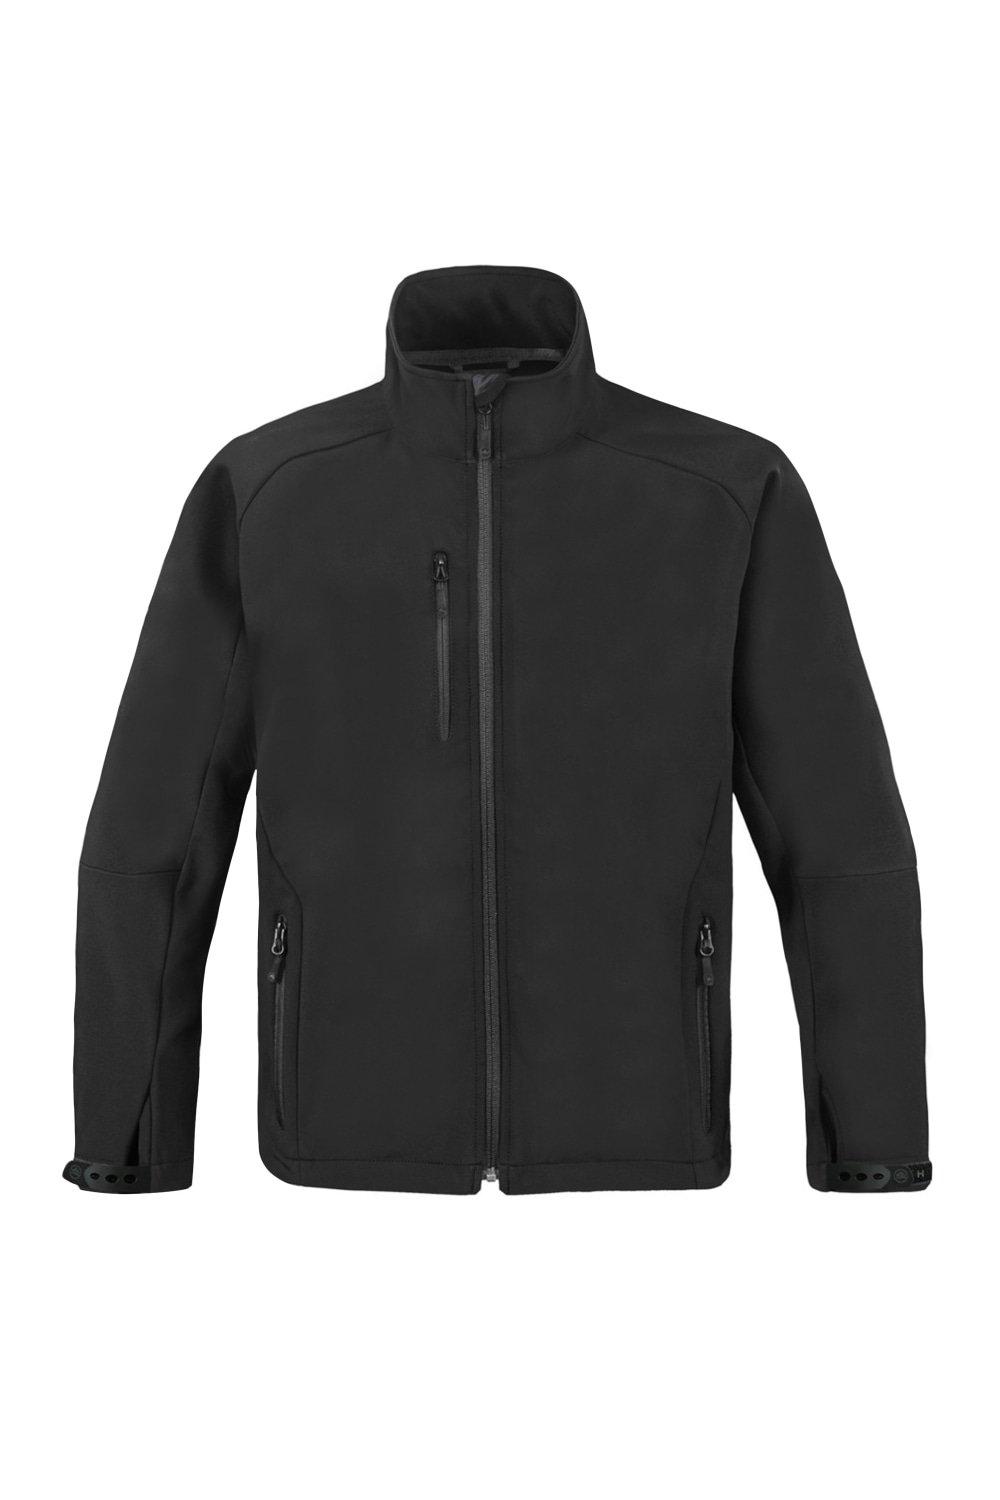 Сверхлегкая куртка из софтшелла (водостойкая и дышащая) Stormtech, черный куртка stormtech размер l черный